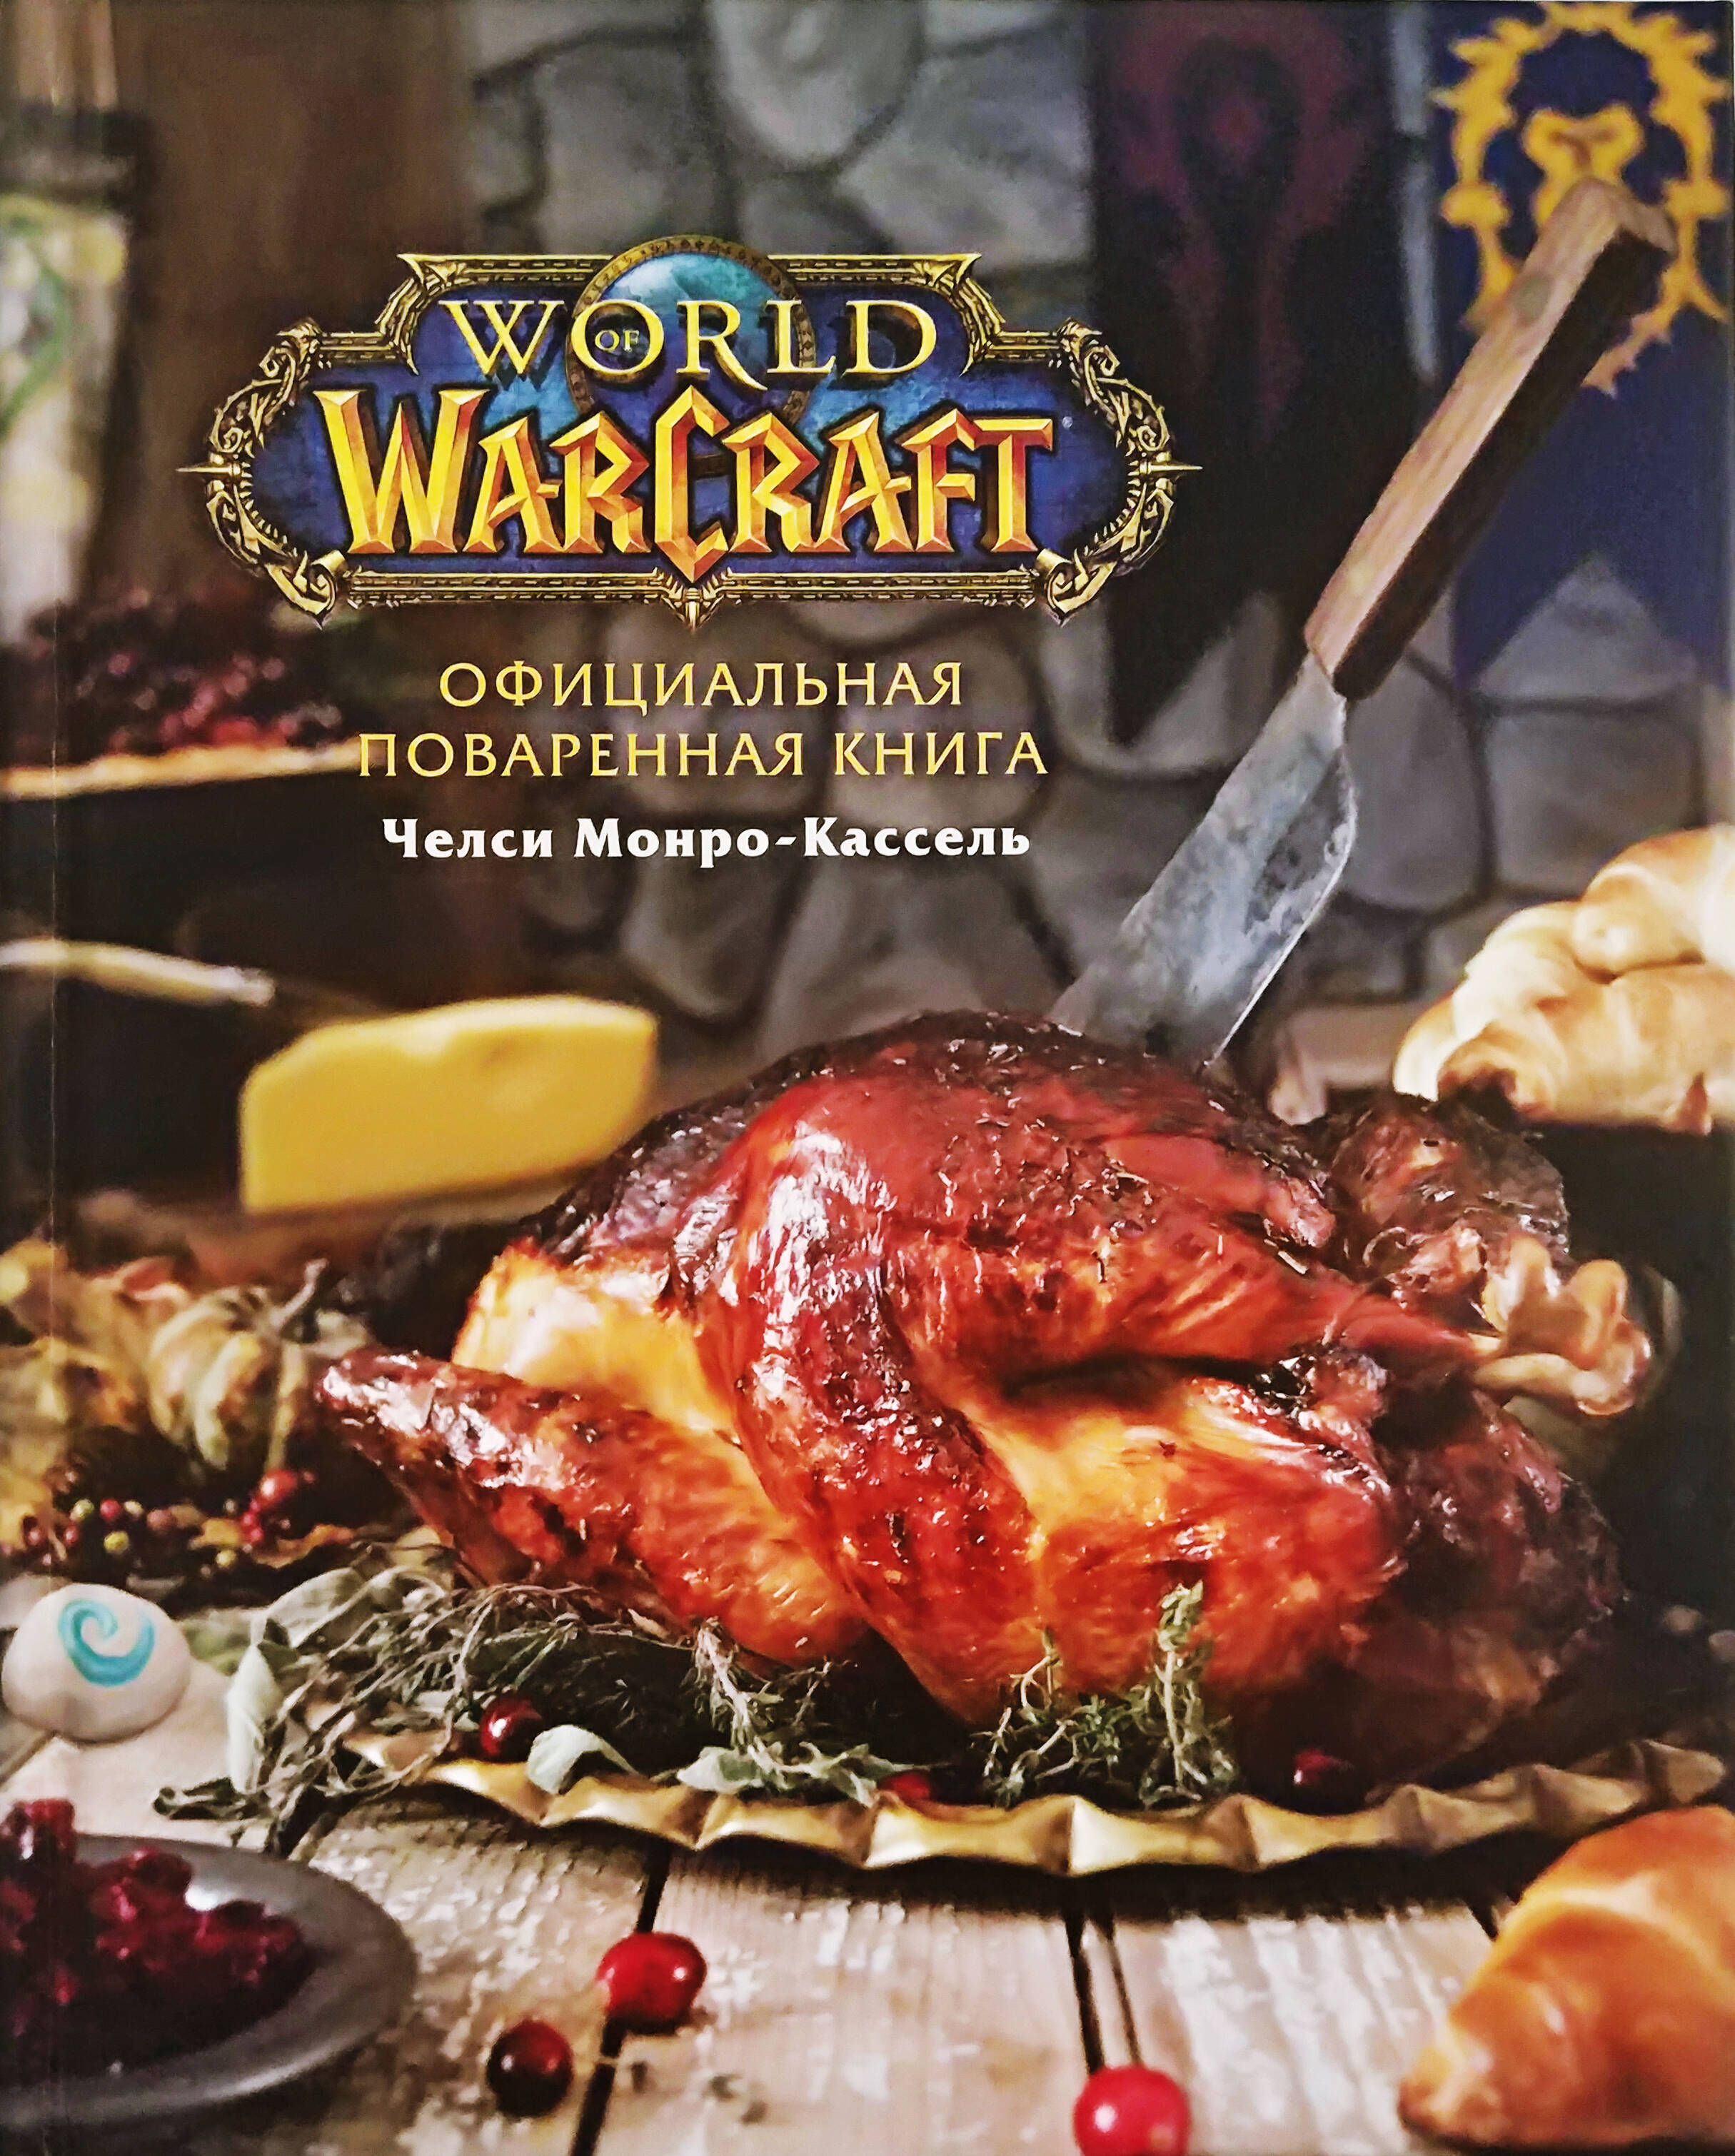 Монро-Кассель Челси Официальная поваренная книга World of Warcraft монро кассель челси официальная поваренная книга world of warcraft